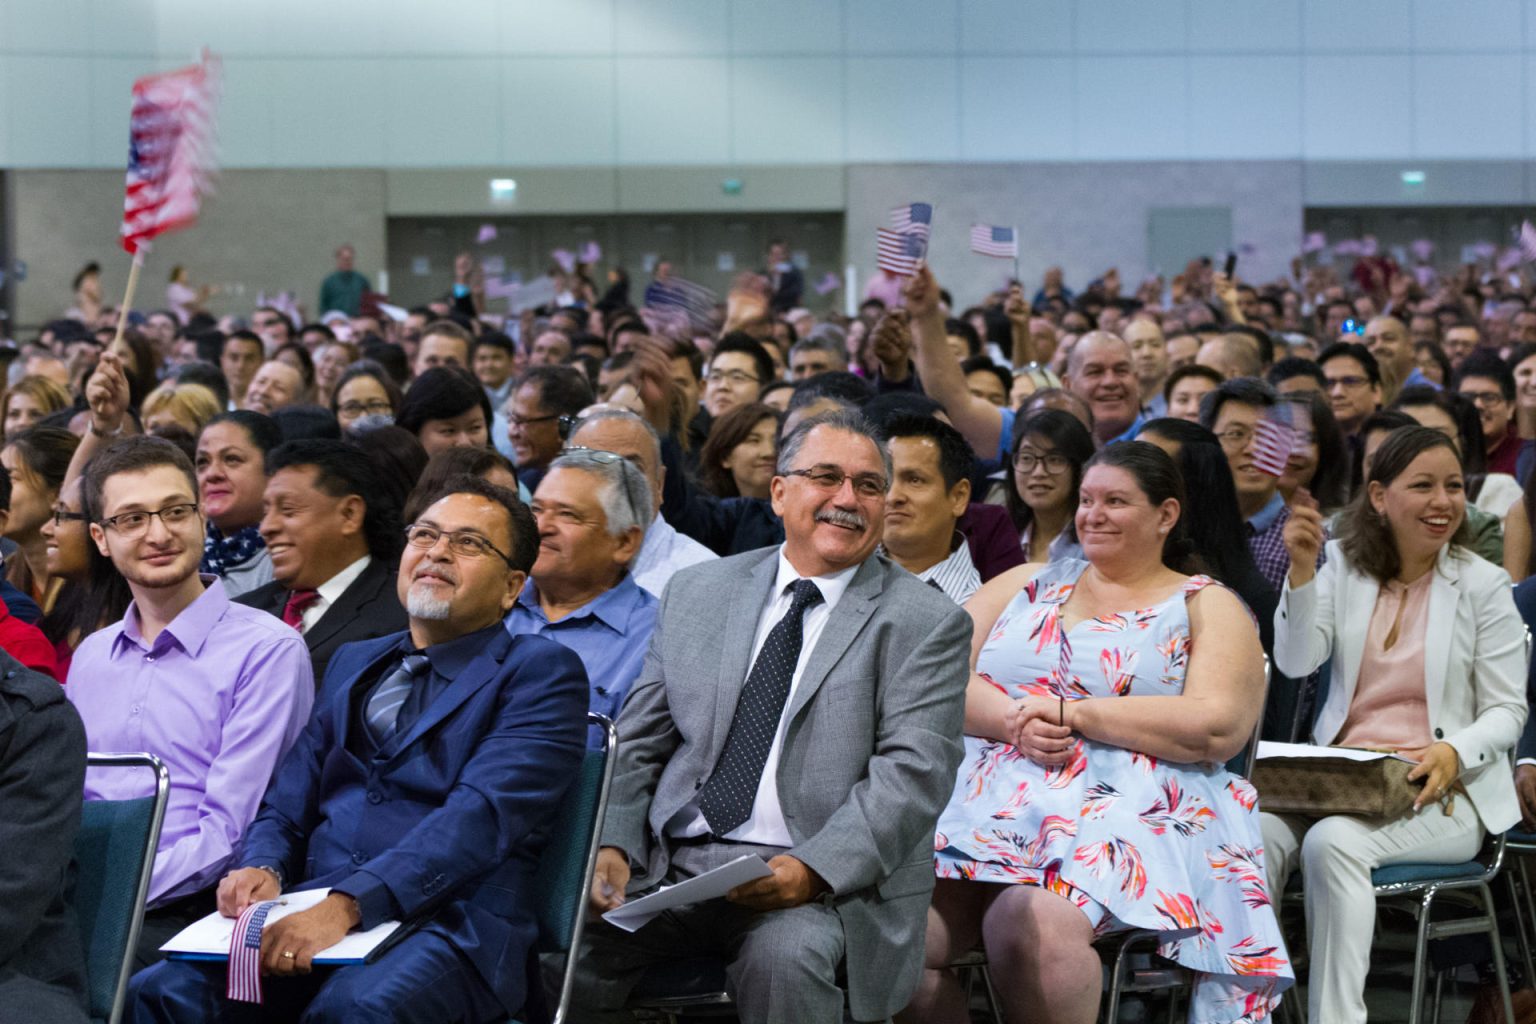 Casi diez mil personas se juramentaron como ciudadanos estadounidenses en una ceremonia de naturalización en el Centro de Convenciones en Los Angeles, CA. Imagen de archivo. EFE/Felipe Chacon